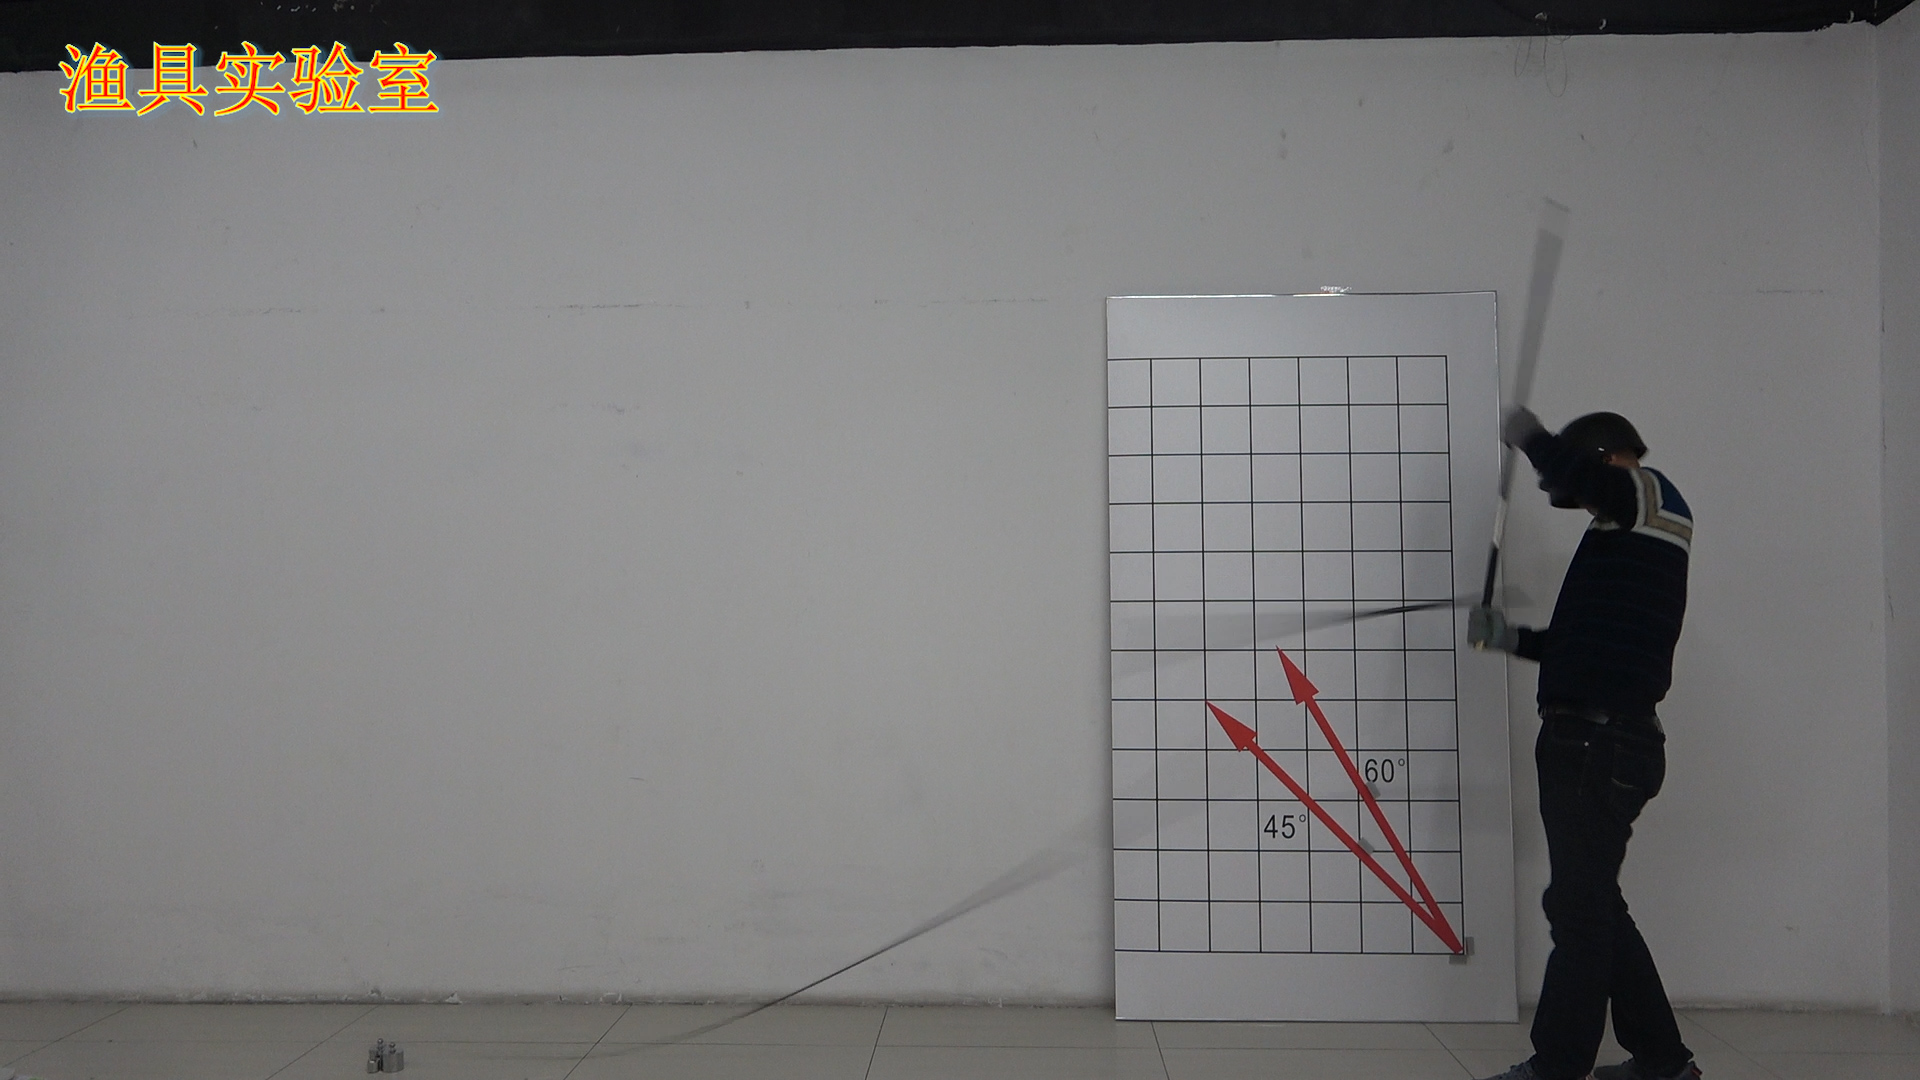 实测威海七支杆晴久典藏版5.4米钓竿，300多可以入手么？